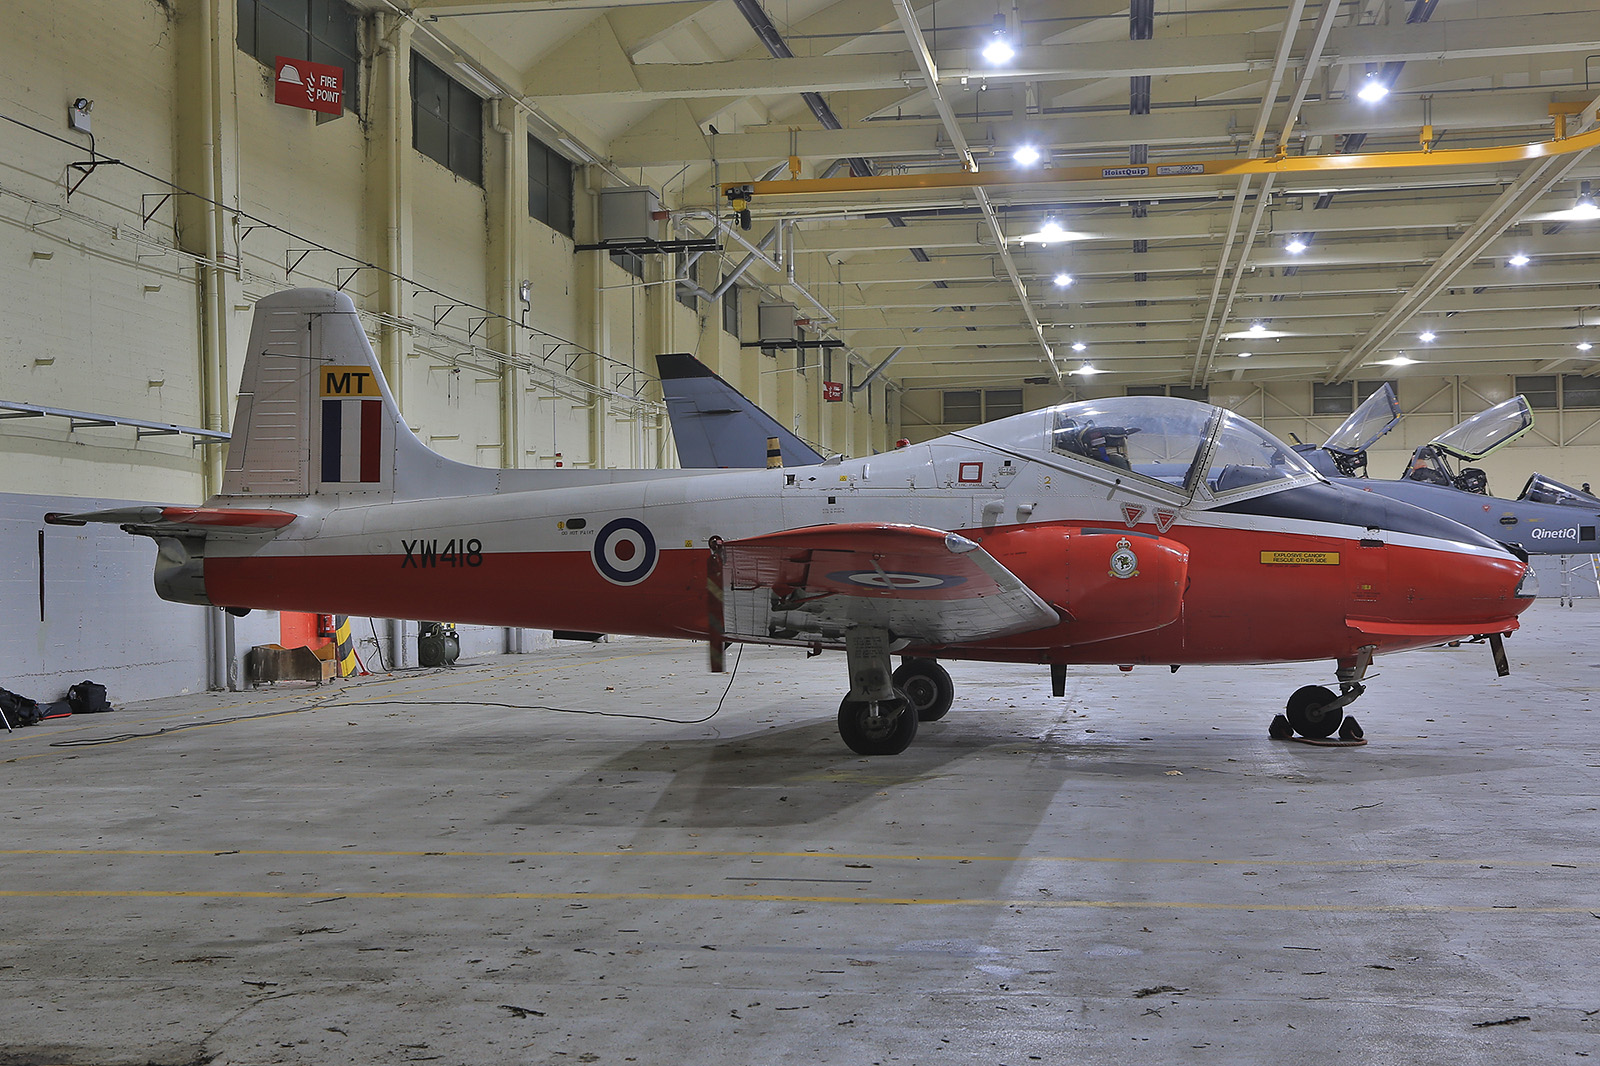 Die BAC Jet Provost war bis 1993 als Trainer in der RAF aktiv.